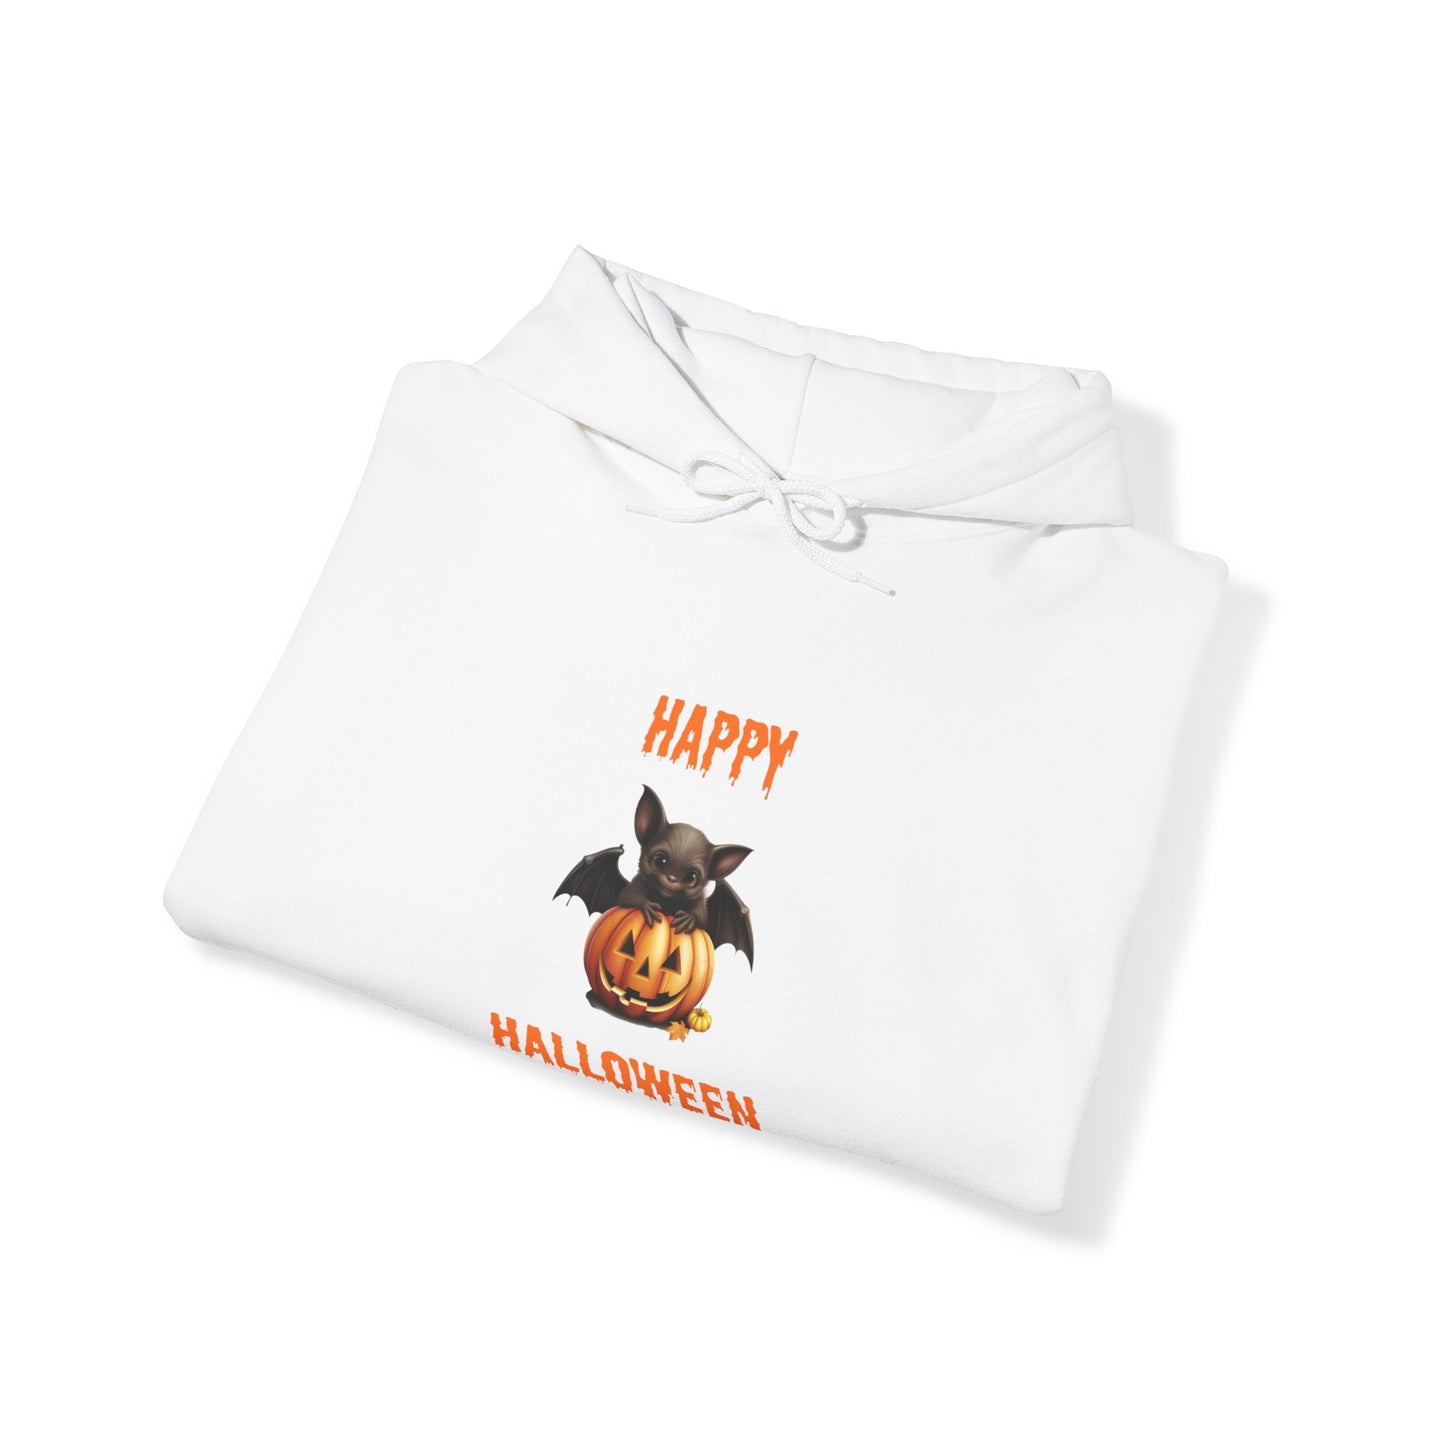 Happy Halloween Bat Hoodie - Unisex Heavy Blend Hooded Sweatshirt